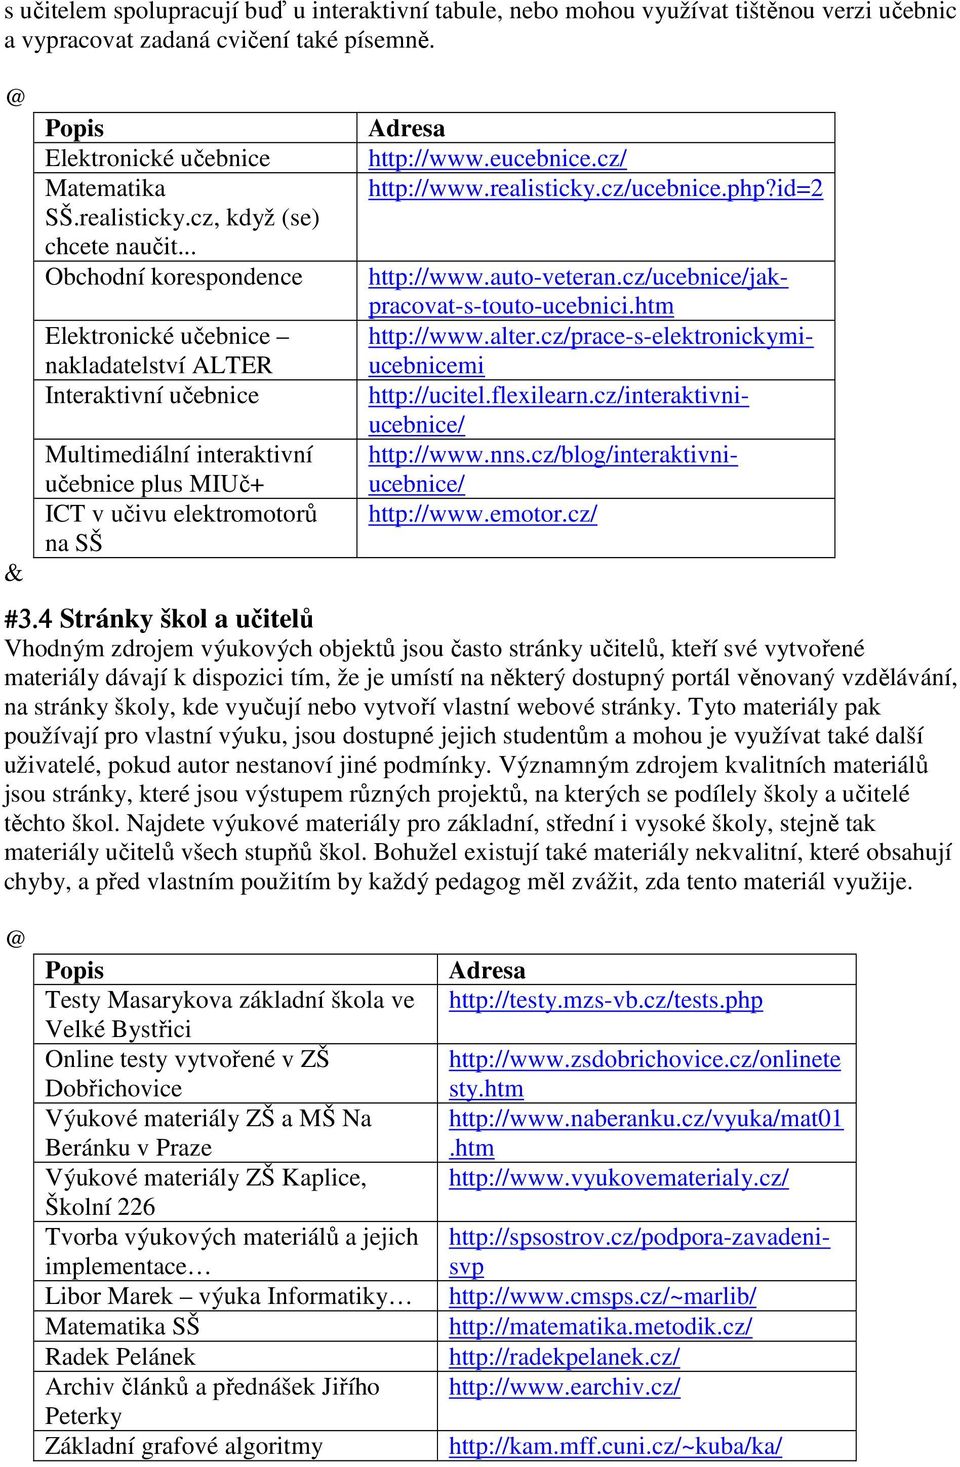 .. Obchodní korespondence Elektronické učebnice nakladatelství ALTER Interaktivní učebnice Multimediální interaktivní učebnice plus MIUč+ ICT v učivu elektromotorů na SŠ Adresa http://www.eucebnice.